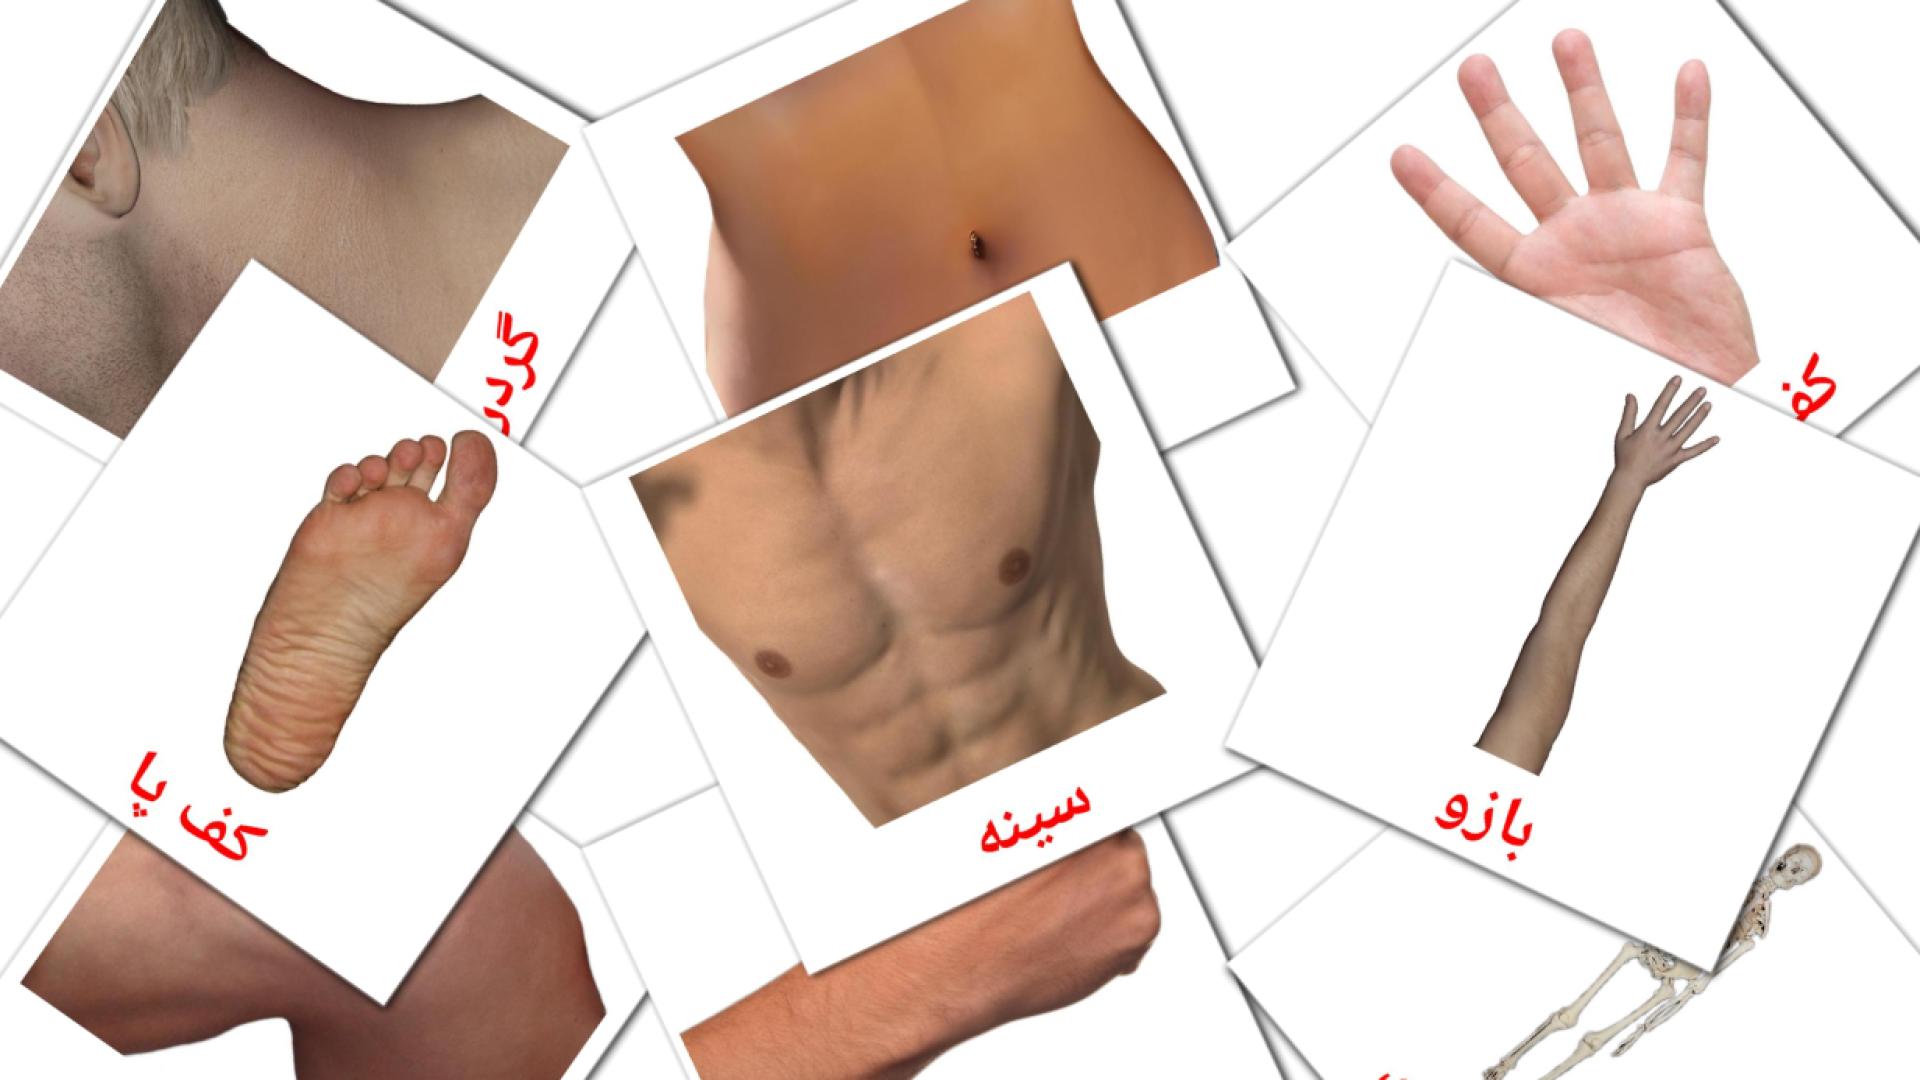 26 Bildkarten für اعضای بدن